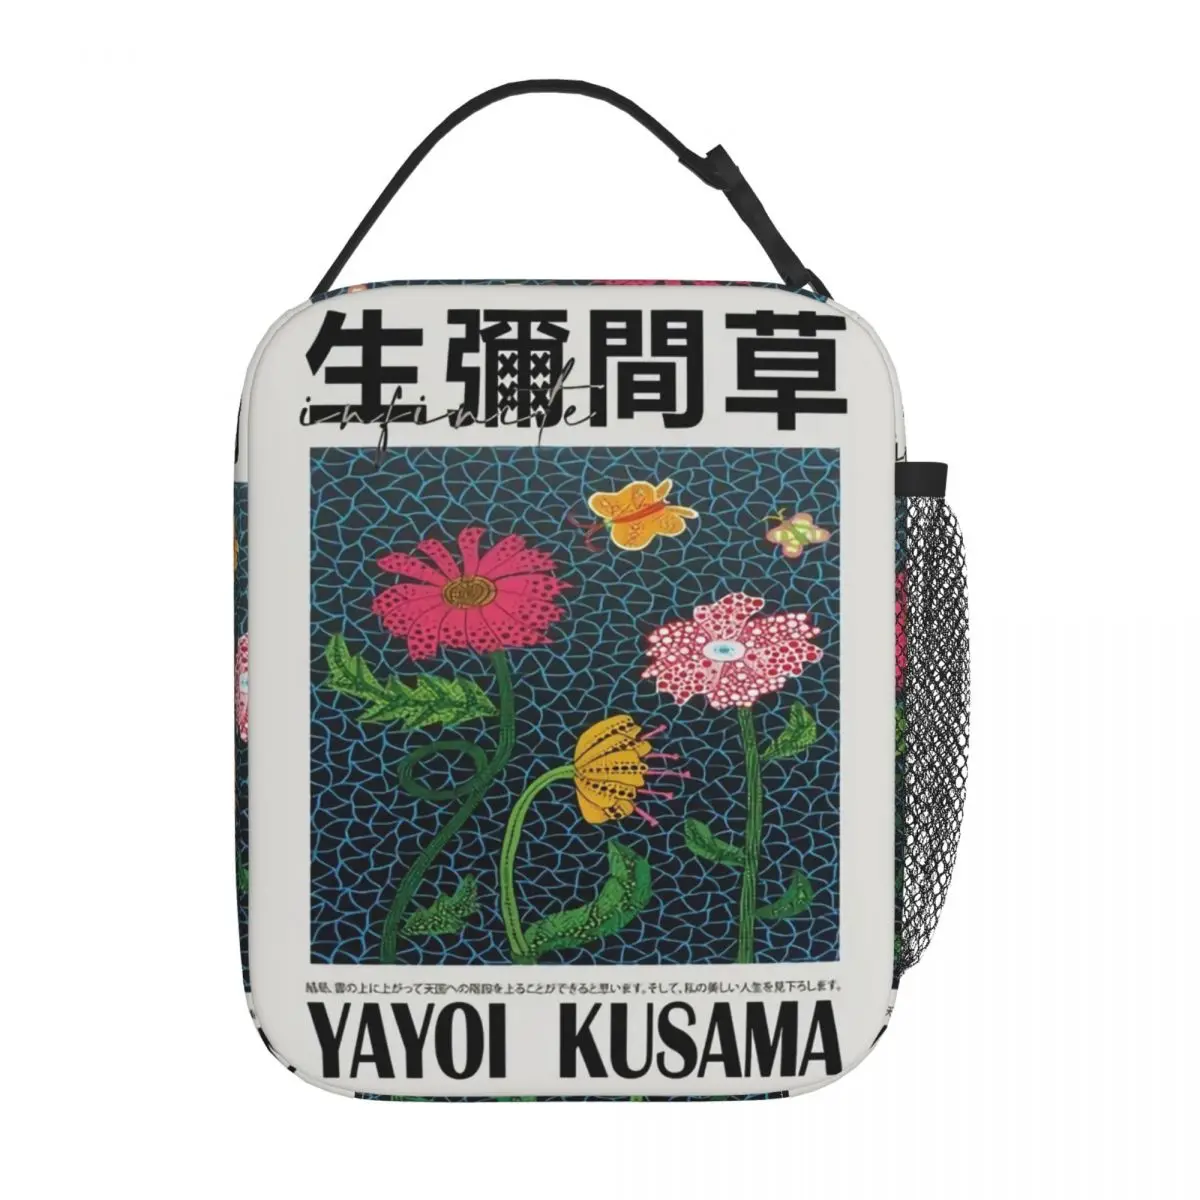 Yayoi Kusama Термоизолированная сумка для ланча в японском стиле в стиле поп-арт Pianic Портативный контейнер для ланча Кулер Термальный ланч-бокс